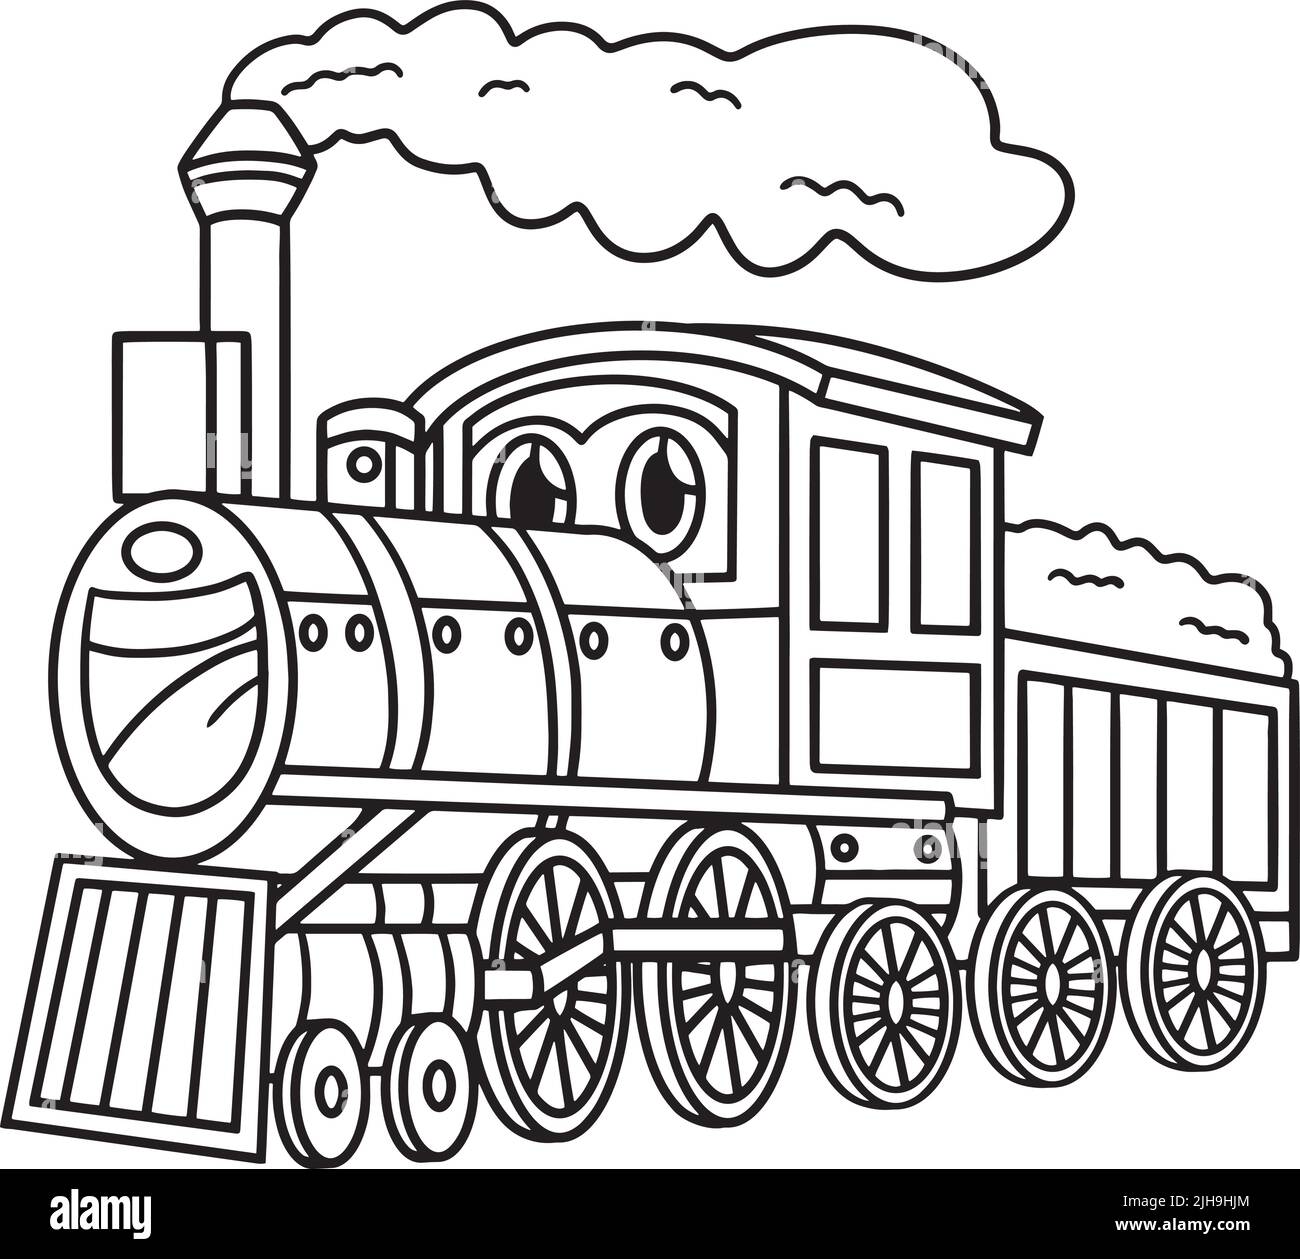 Dampflokomotive mit Face Vehicle Coloring Stock Vektor